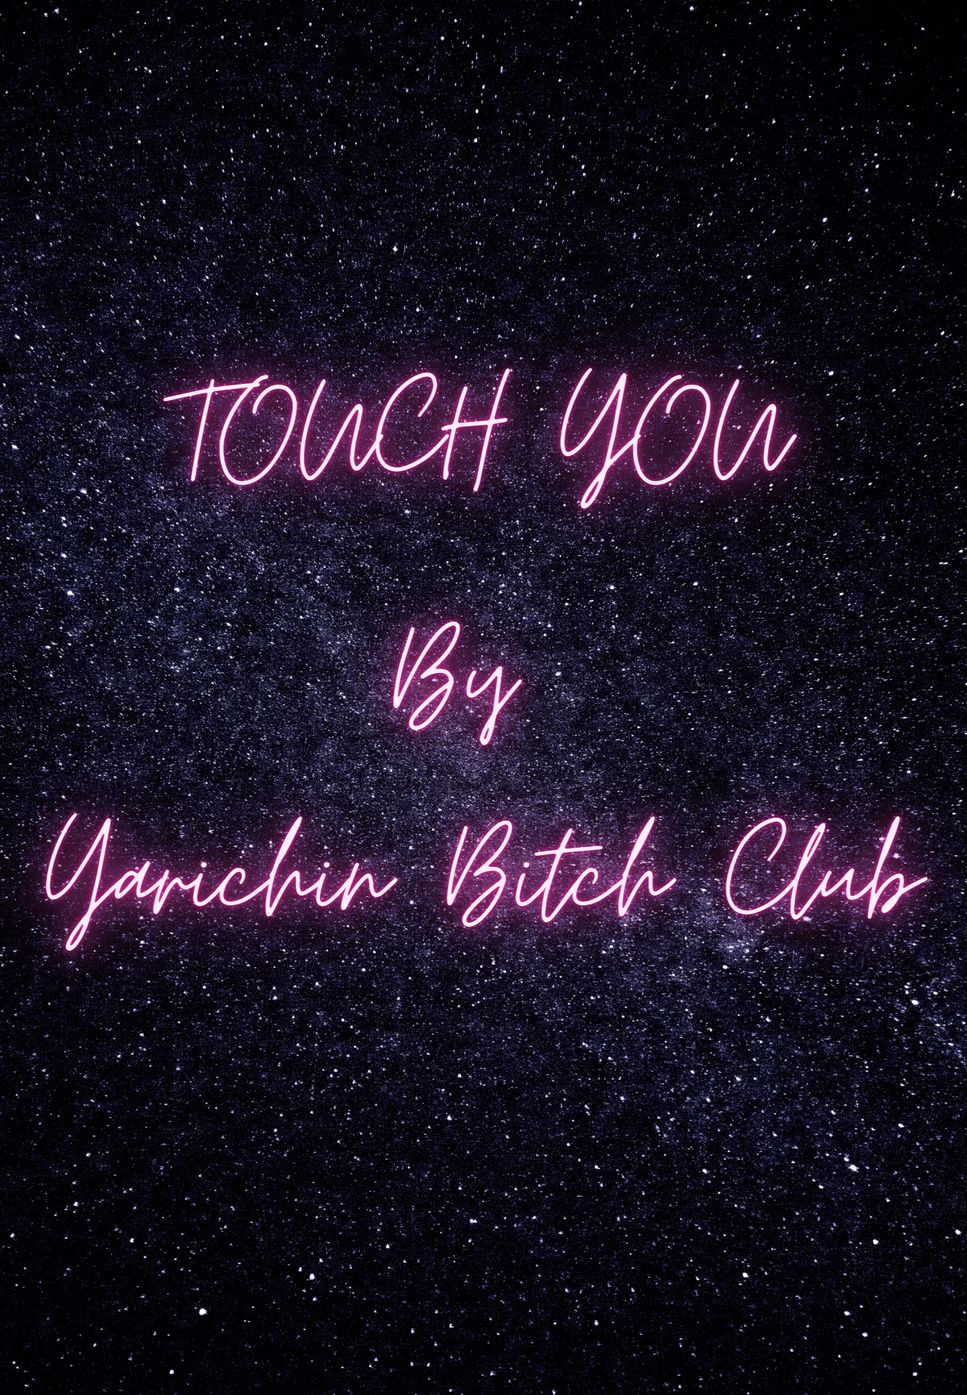 ヤリチン☆ビッチ部 - TOUCH YOU by Esther